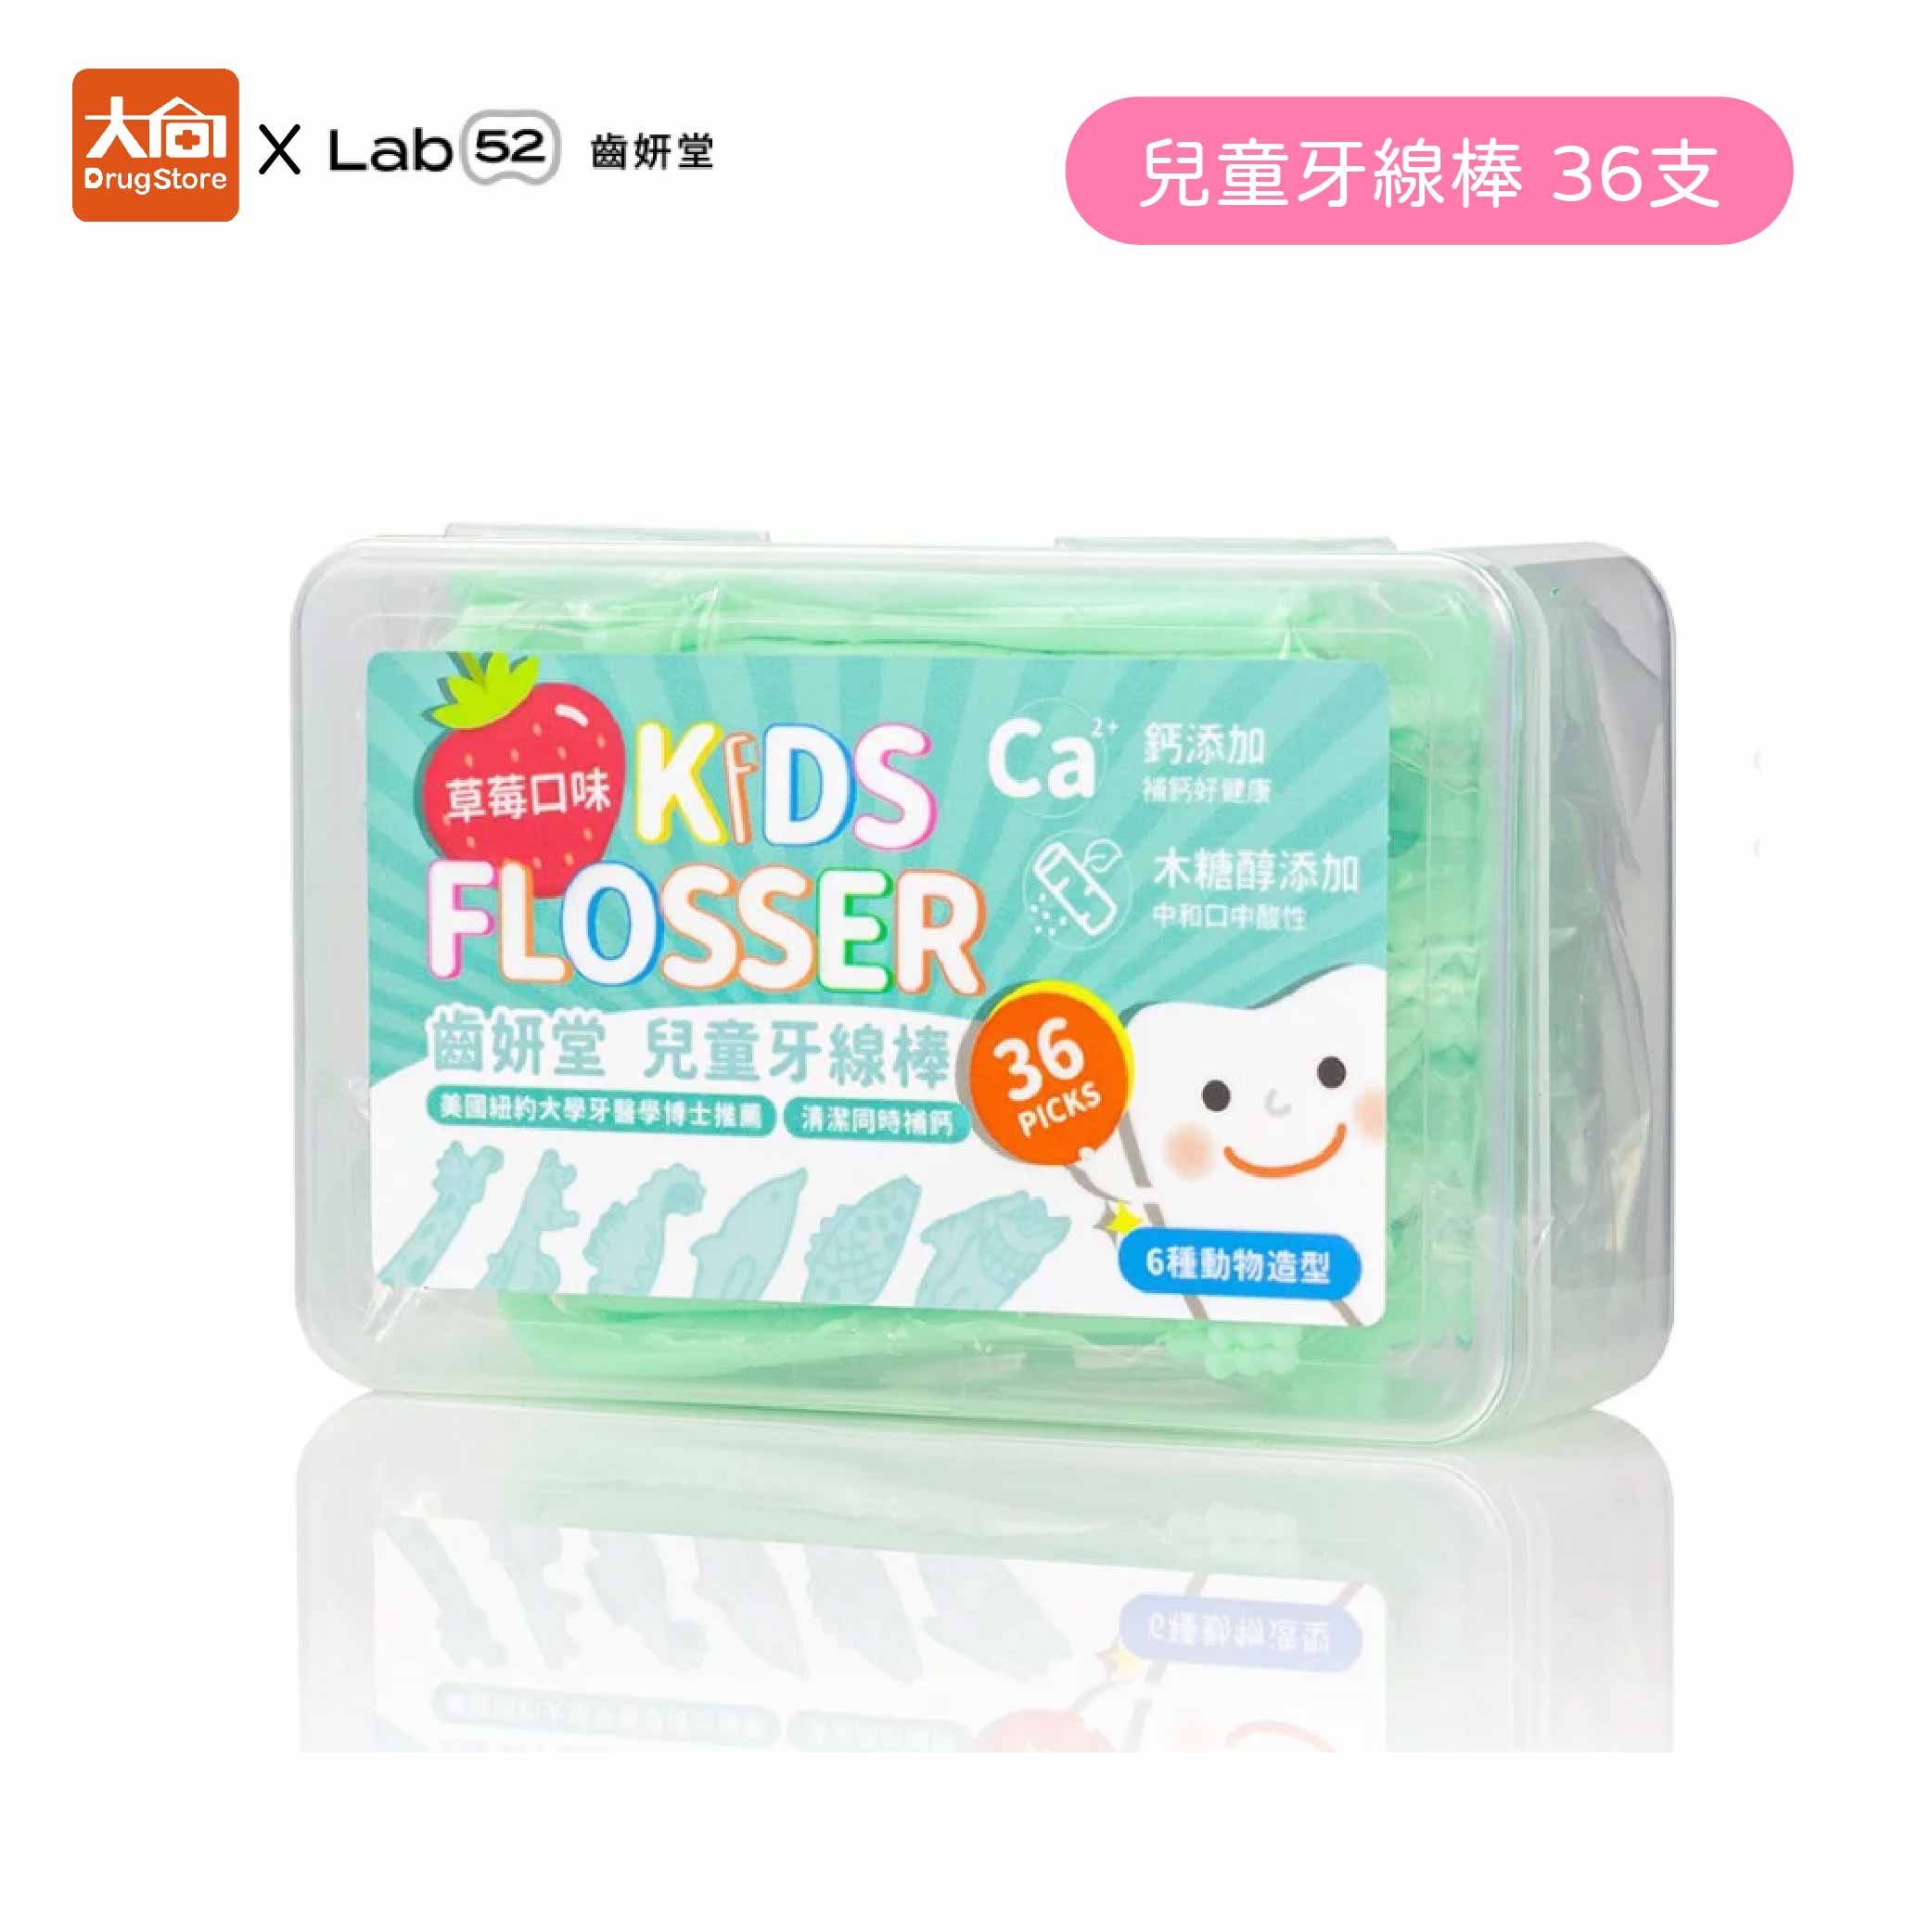 【齒妍堂】T-SPRAY KIDS兒童牙線棒 草莓口味(36支/盒) 含乳酸鈣/木糖醇